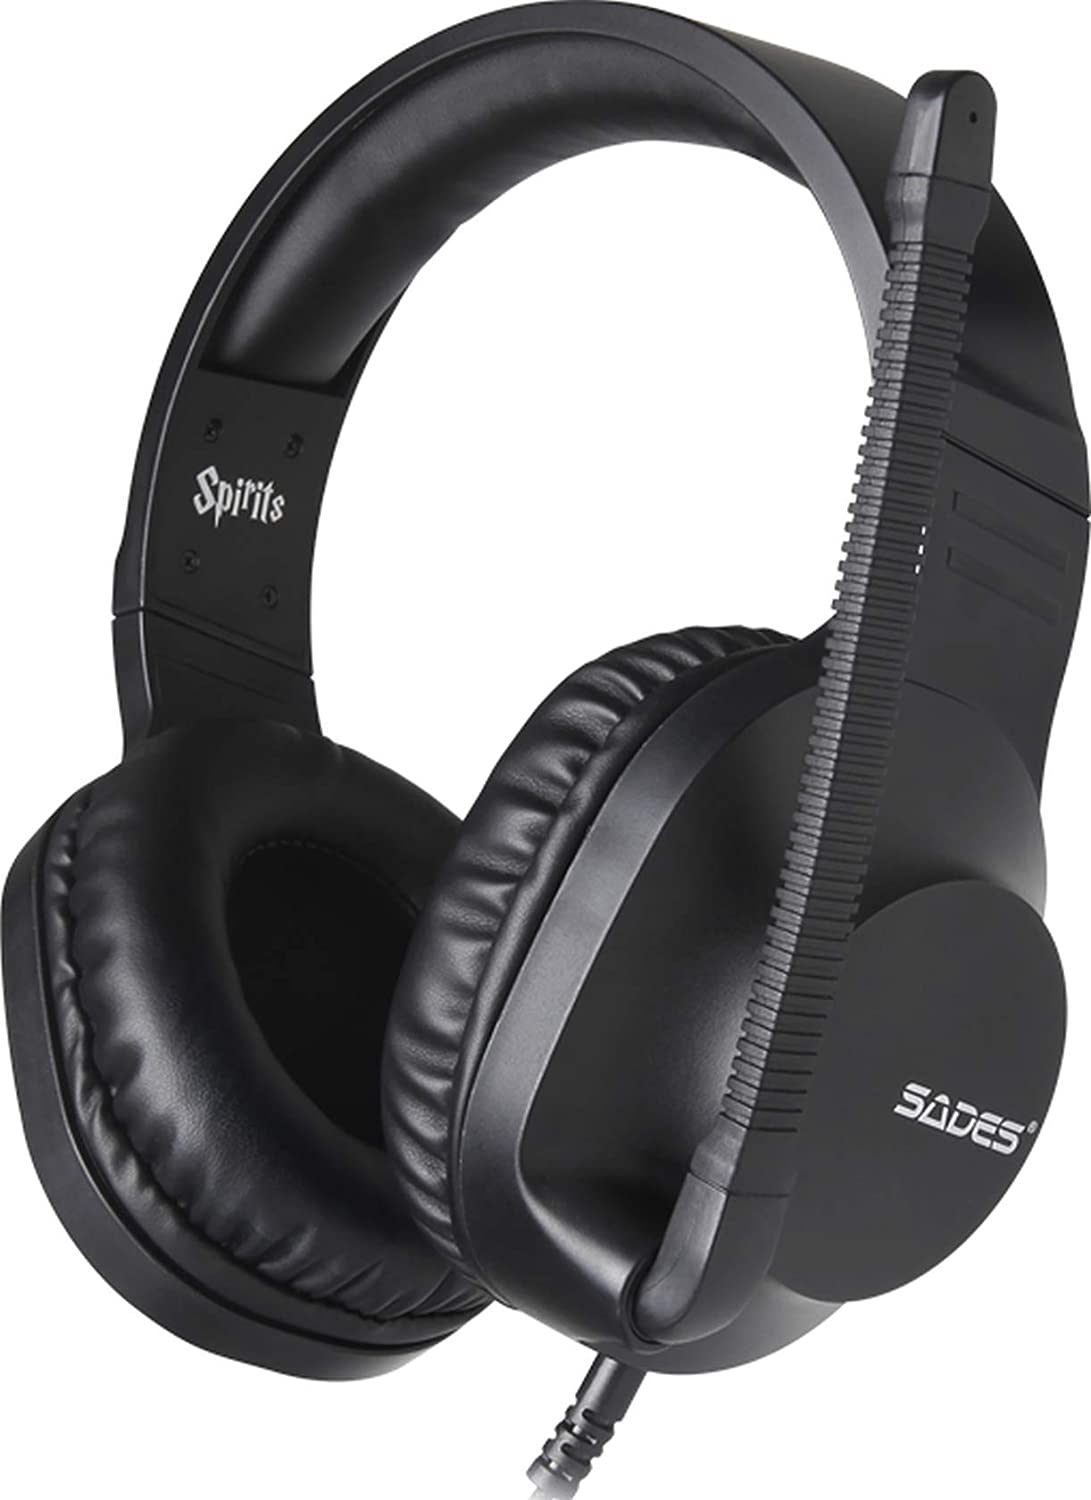 SADES Gaming Headset-Spirits (SA-721) -BLACK